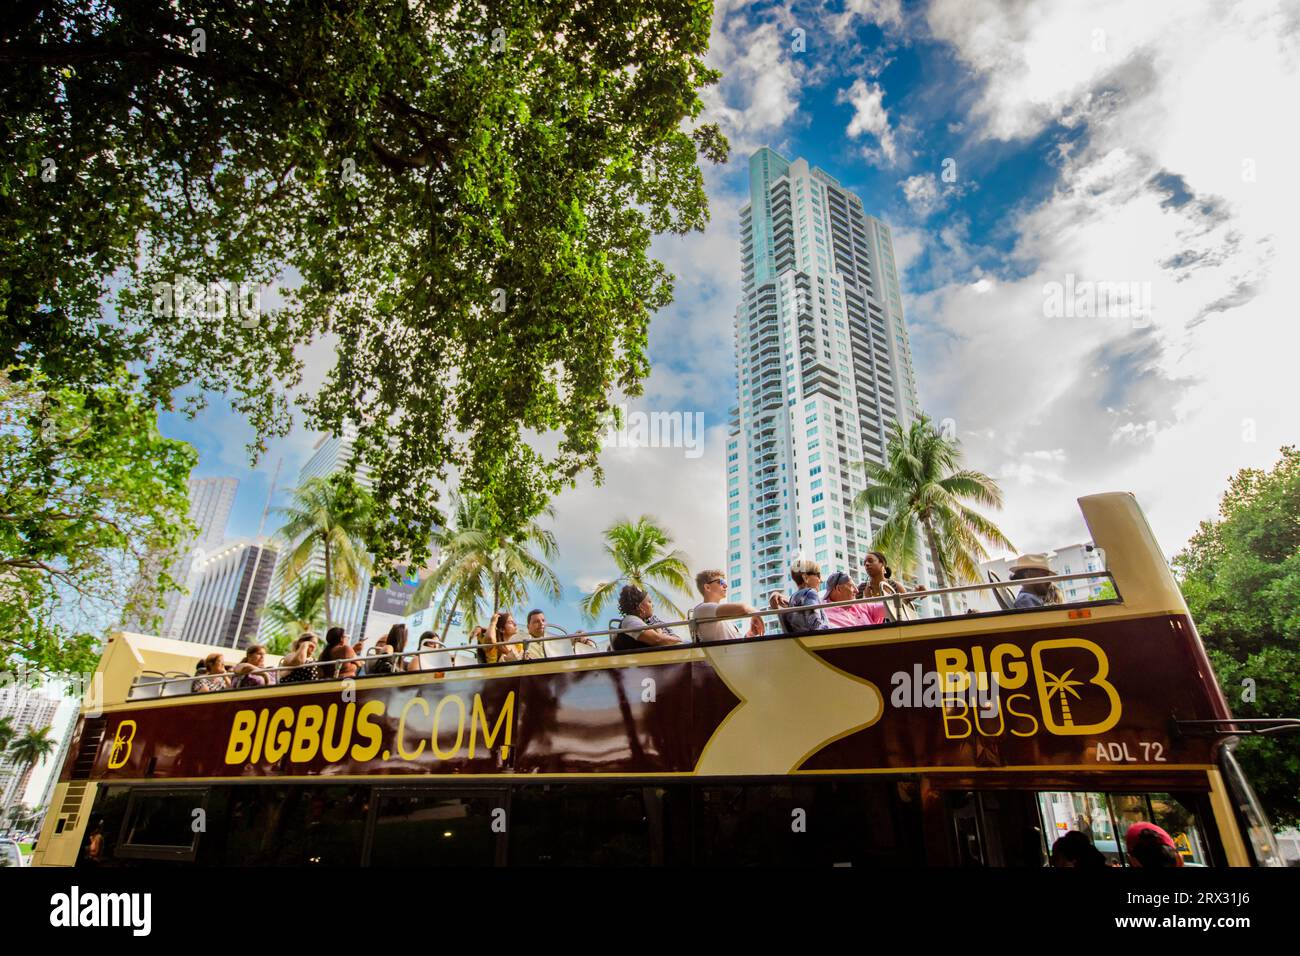 Big bus Tour à Miami, Miami, Floride, États-Unis d'Amérique, Amérique du Nord Banque D'Images